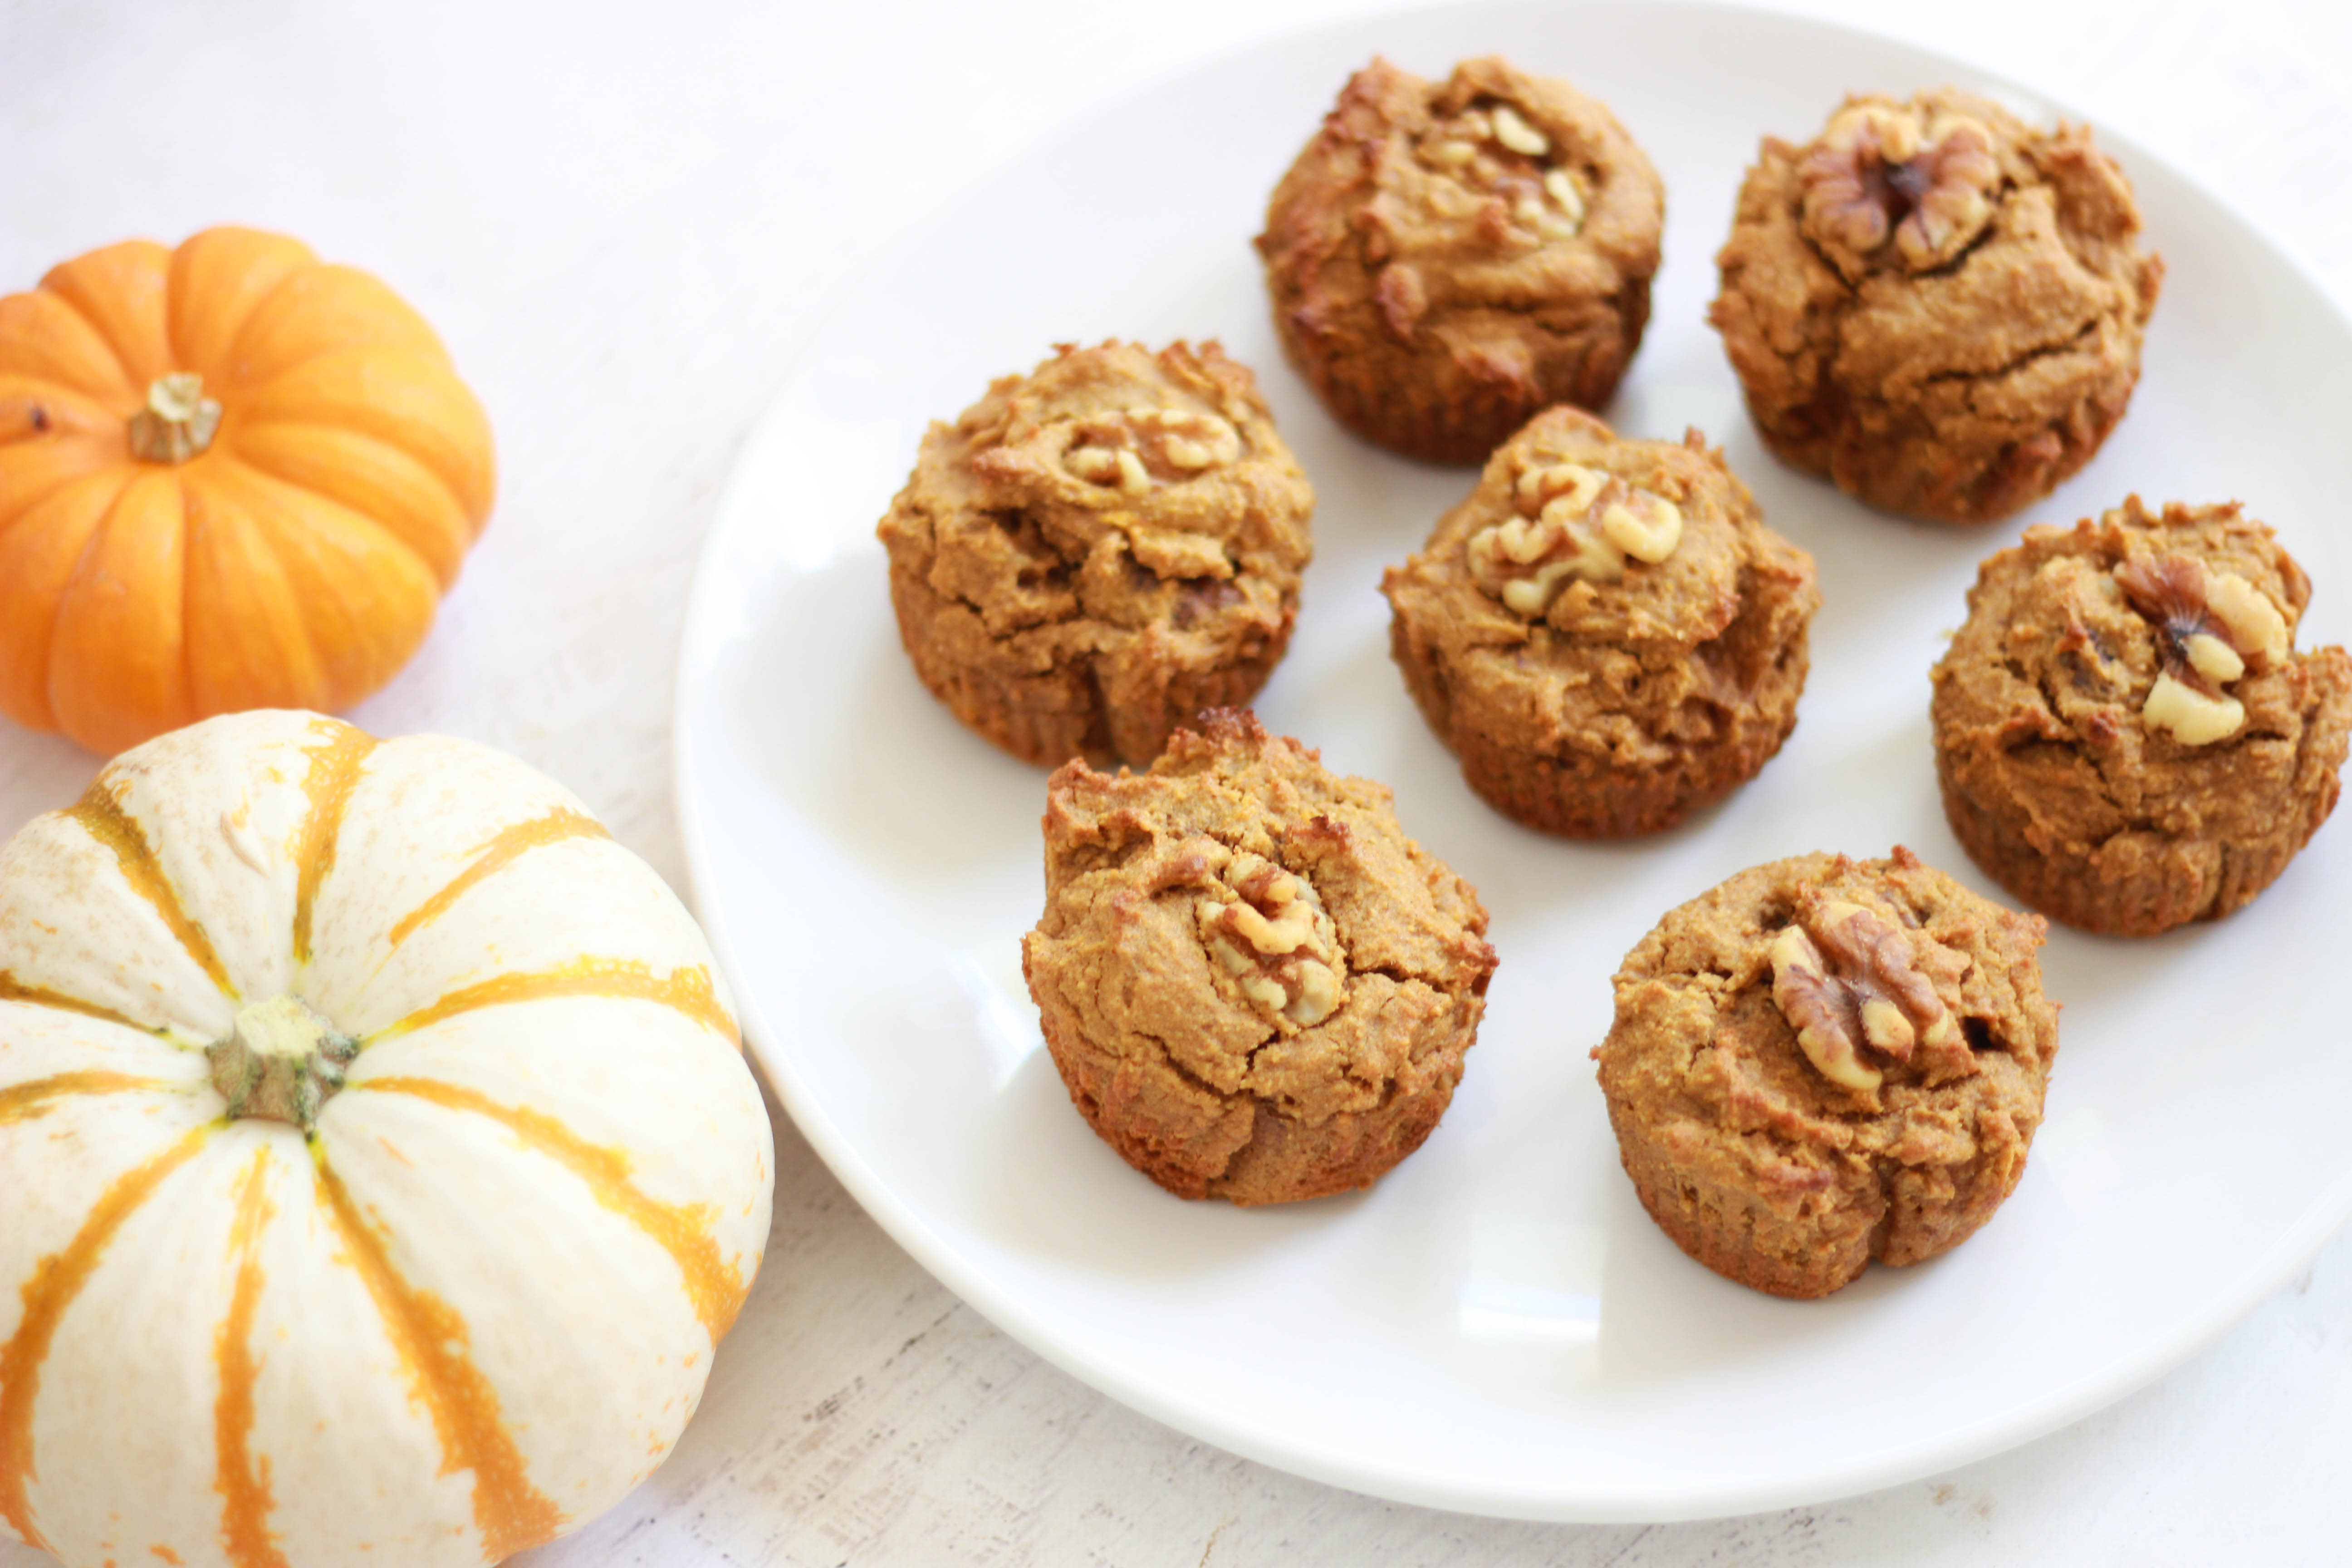 Pumpkin Walnut Muffins (Sugar-Free / Paleo)